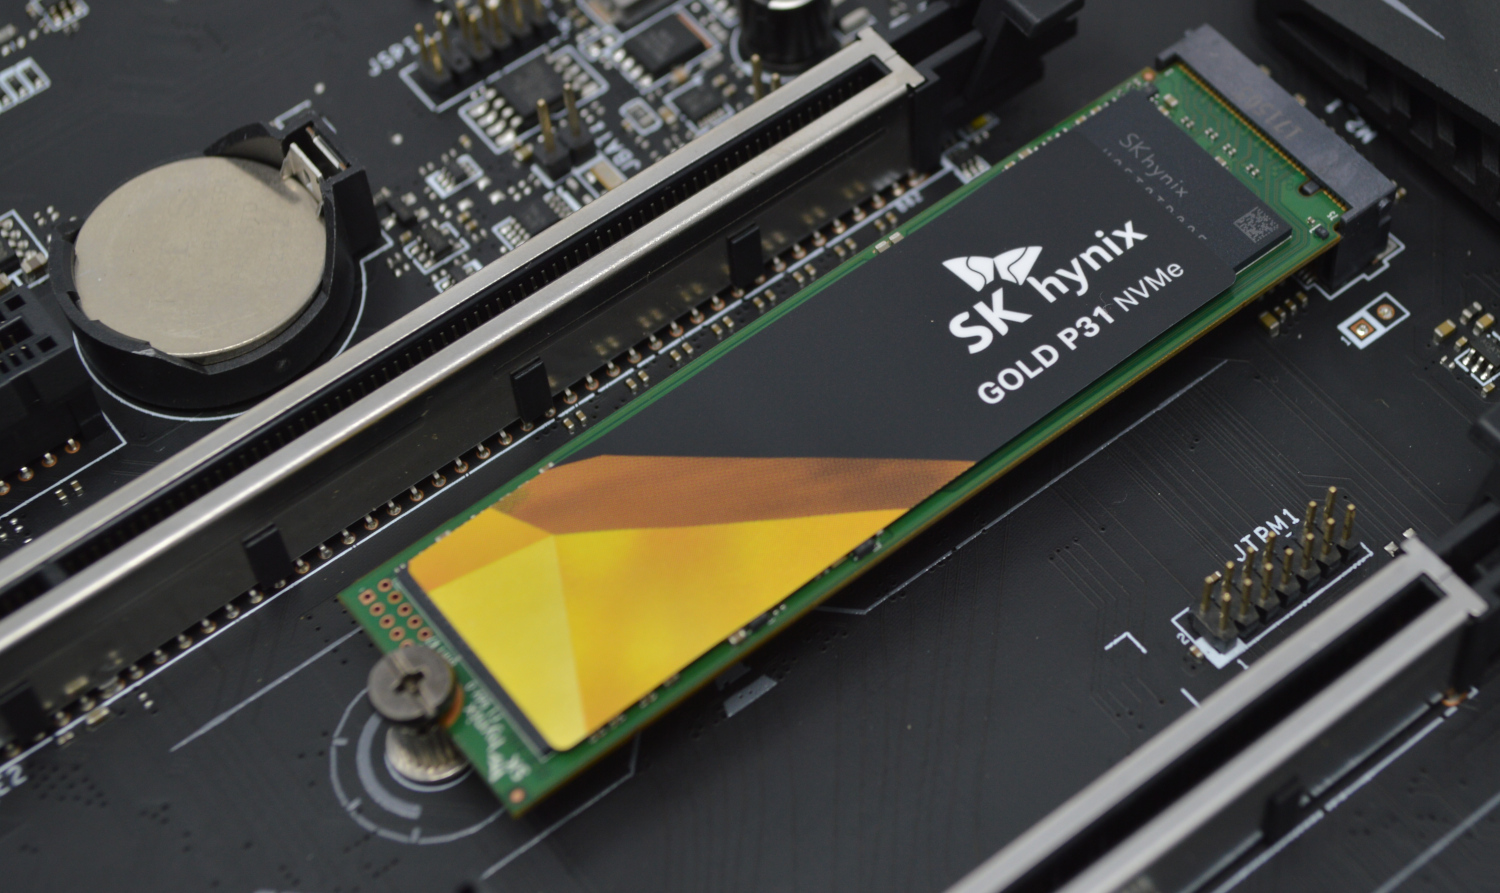 Hynix Gold P31 1TB NVMe SSD Review - ServeTheHome